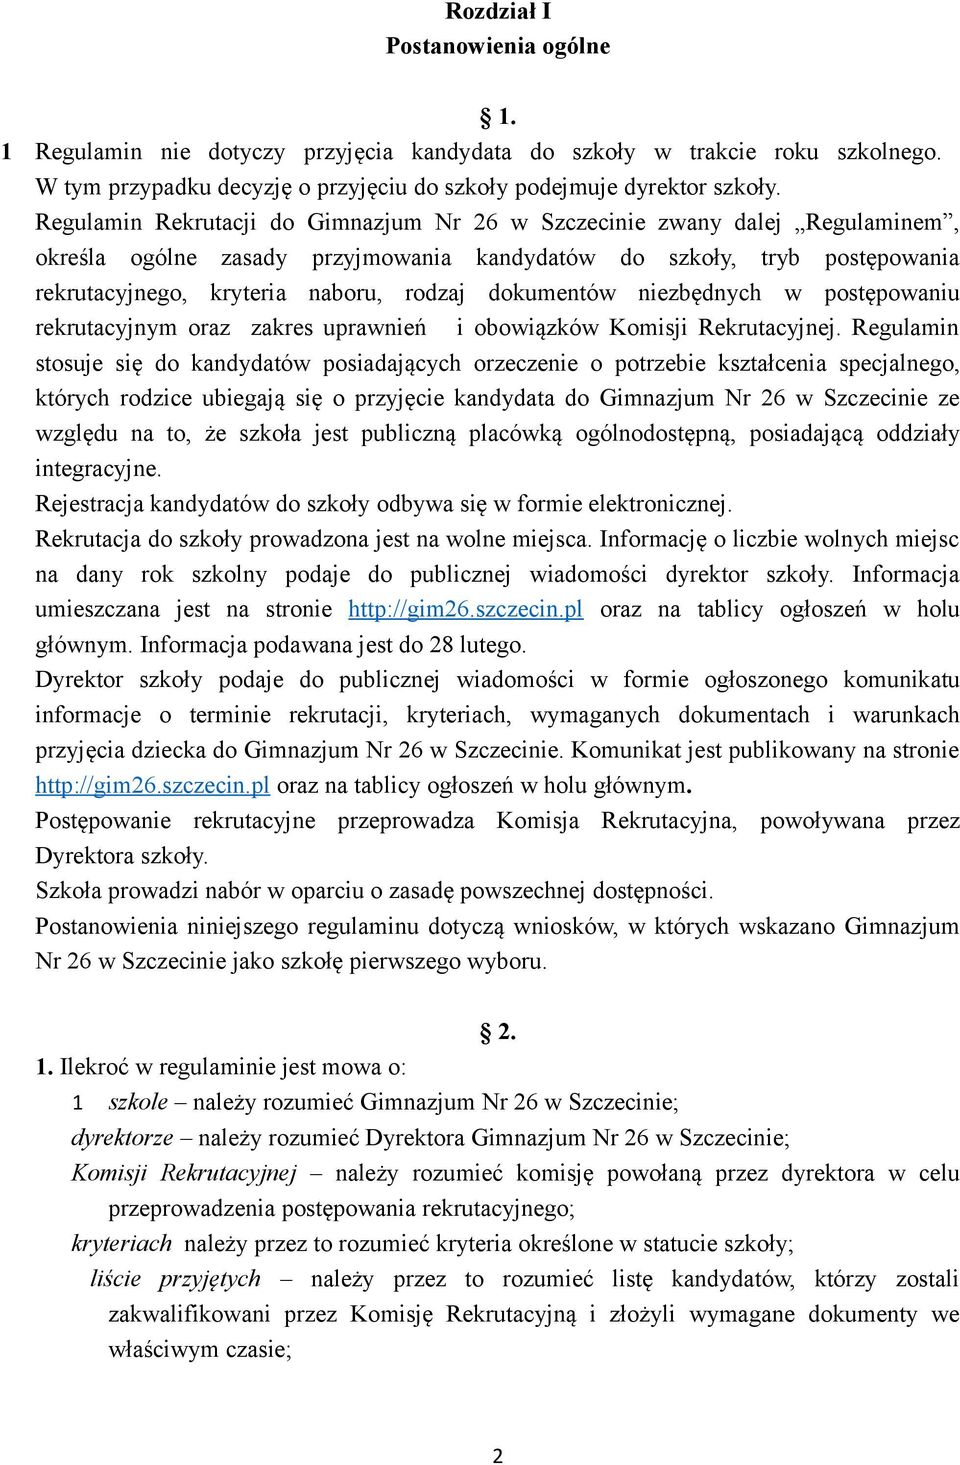 Regulamin Rekrutacji do Gimnazjum Nr 26 w Szczecinie zwany dalej Regulaminem, określa ogólne zasady przyjmowania kandydatów do szkoły, tryb postępowania rekrutacyjnego, kryteria naboru, rodzaj